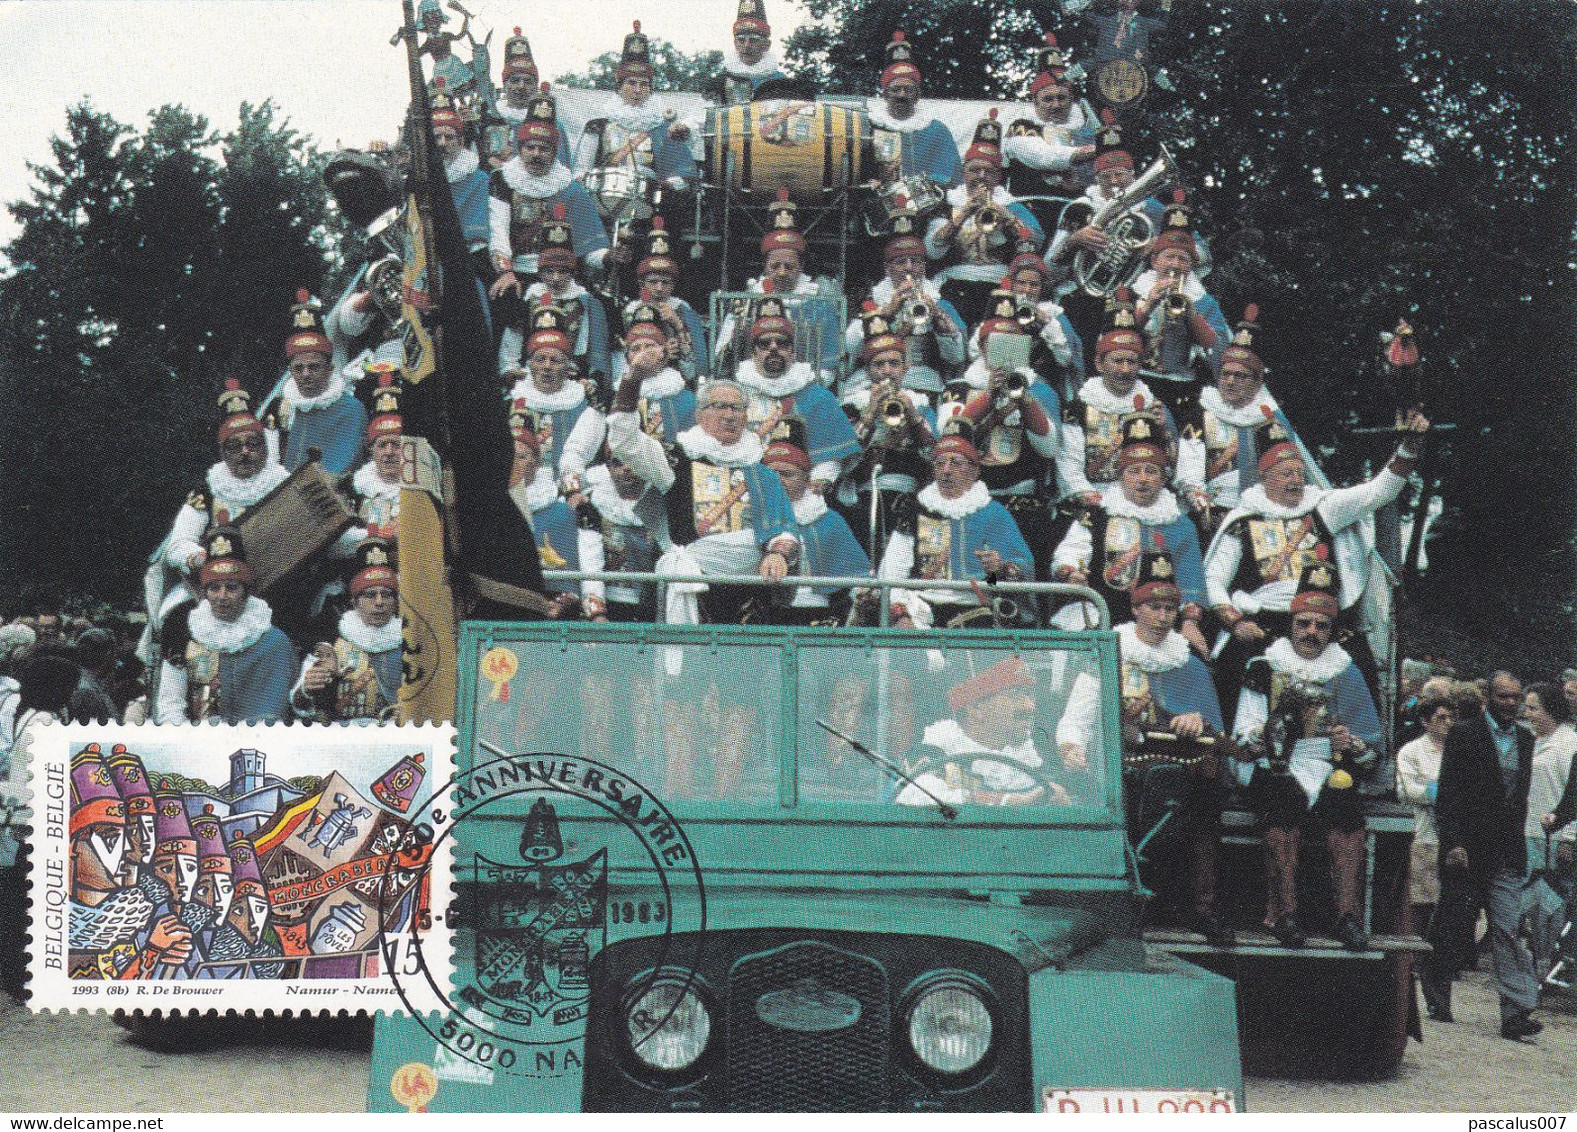 B01-325 Belgique 2510 Folklore CS - Carte Souvenir FDC 05-06-1993 5000 Namur - 1991-2000